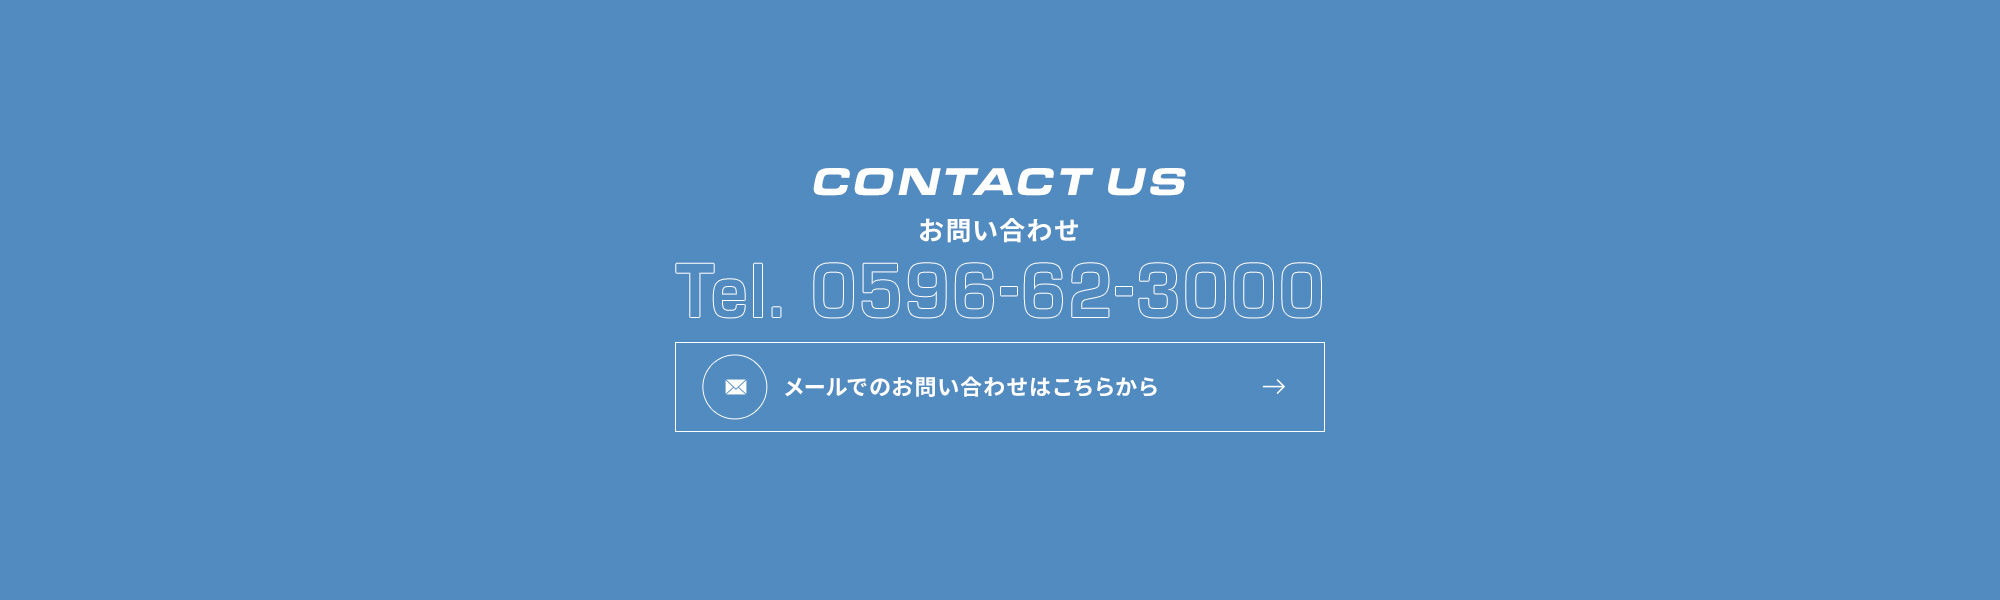 bnr_contact